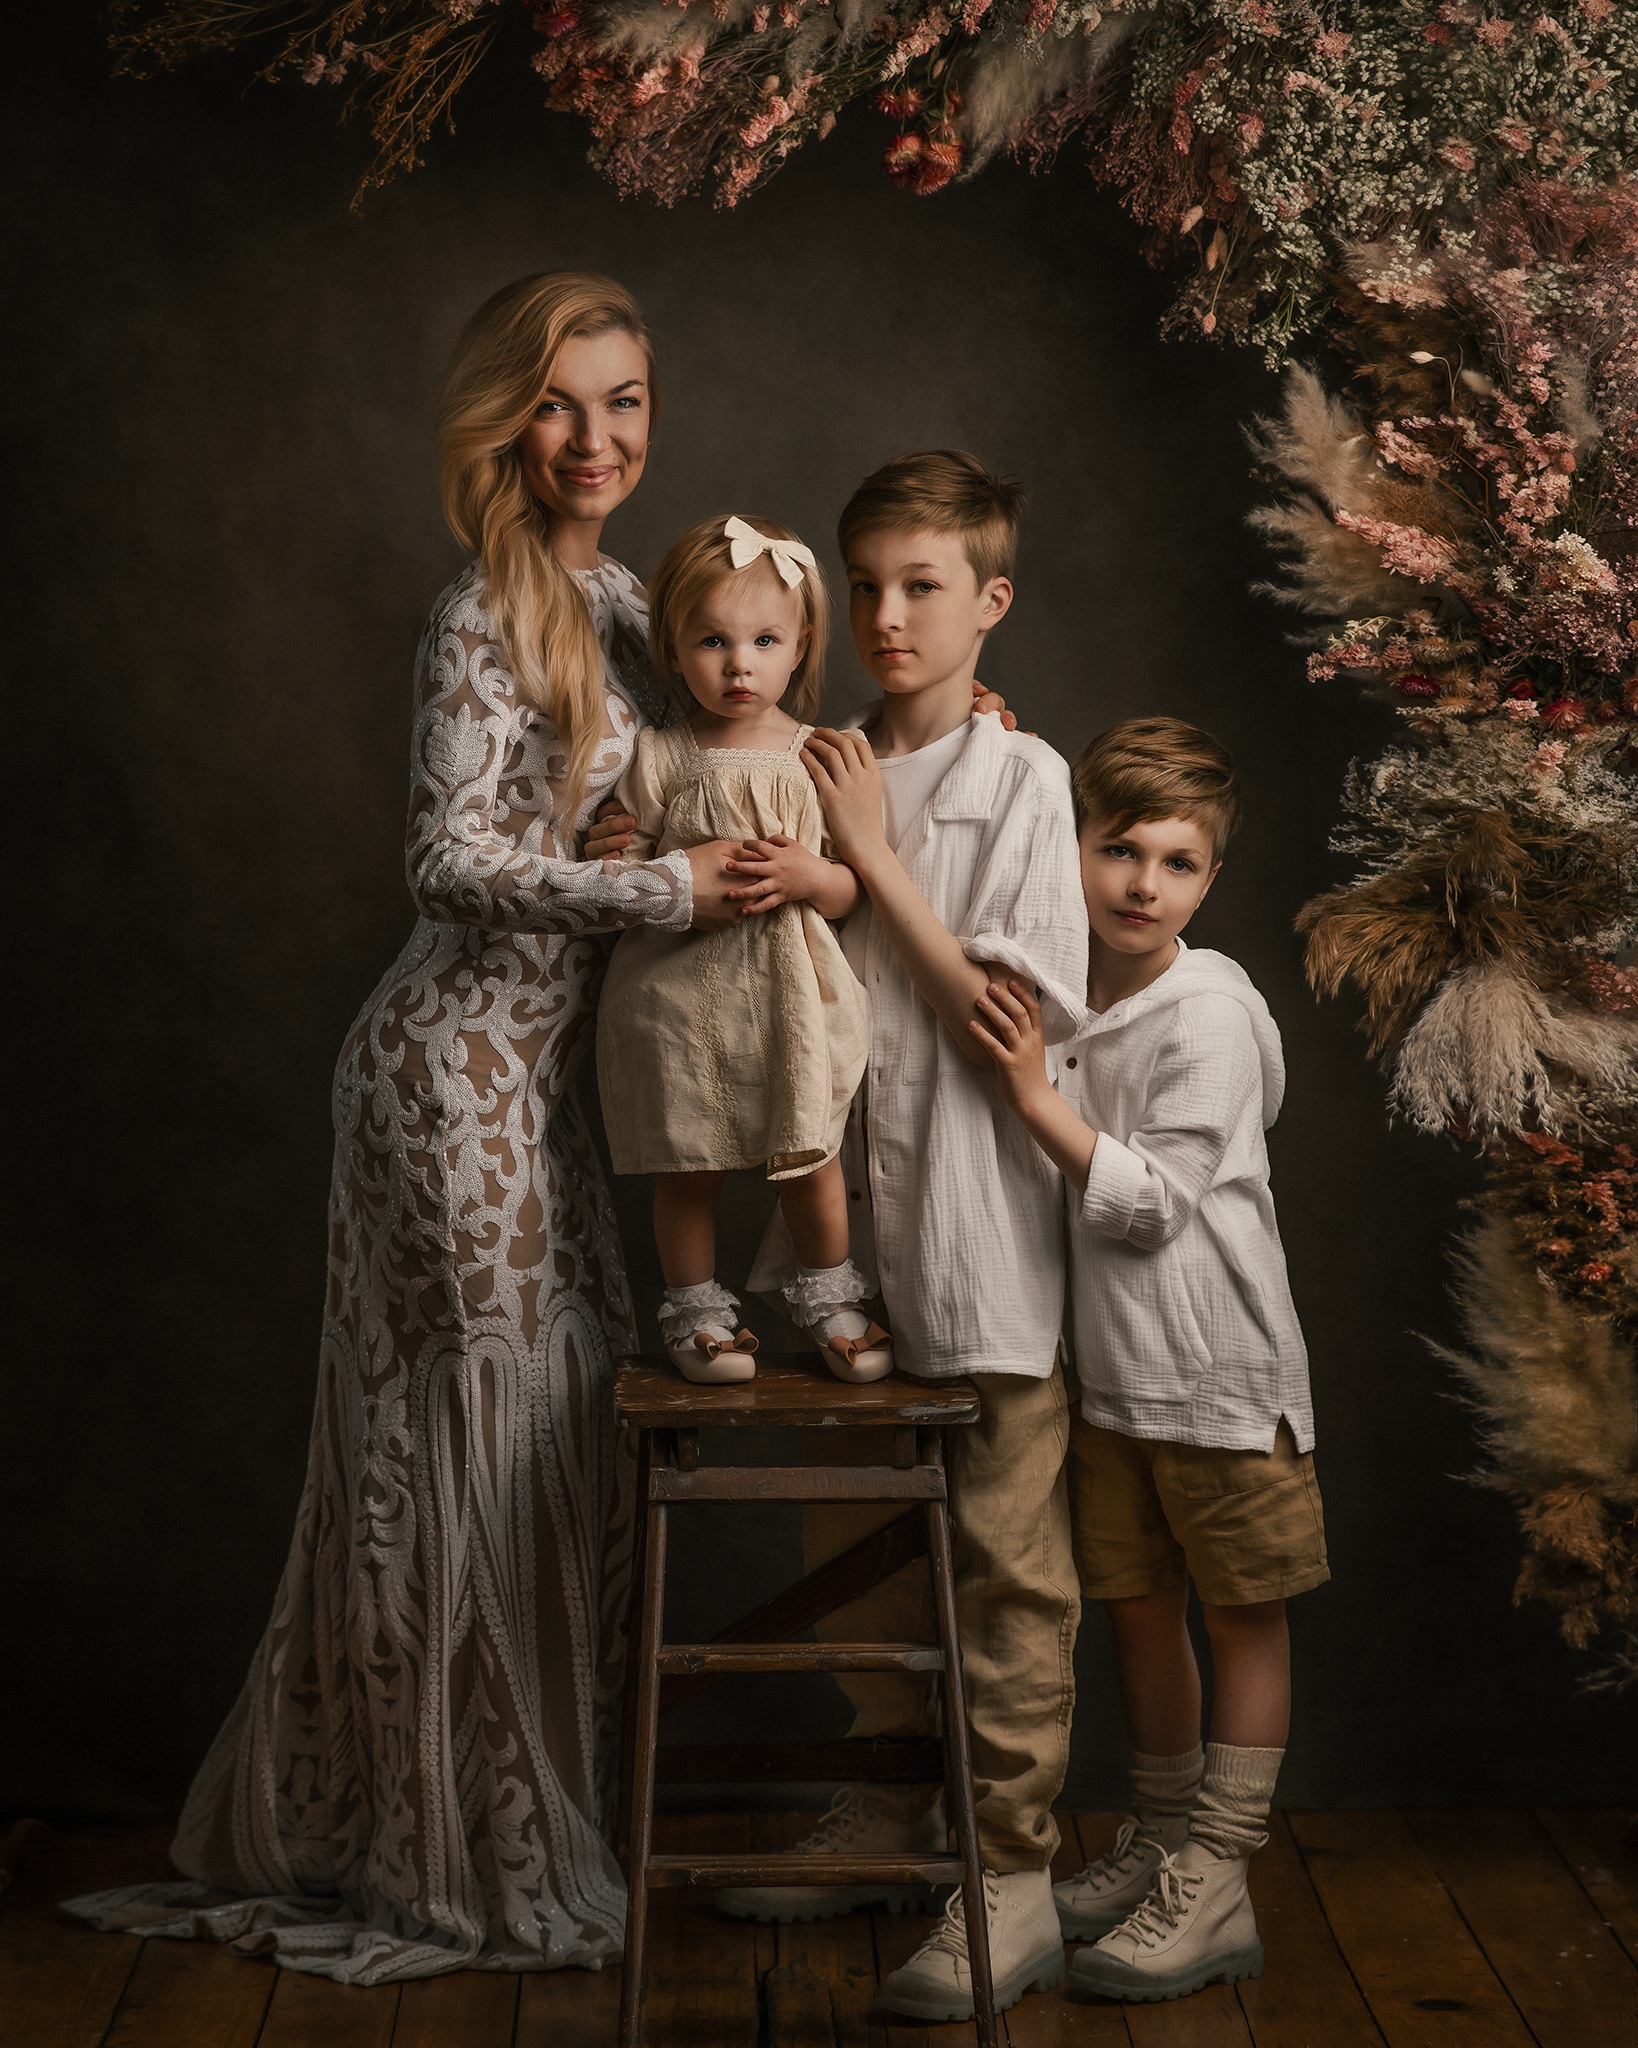 boho style family photoshoot, mom and kids wearing white boho clothing, flower arch